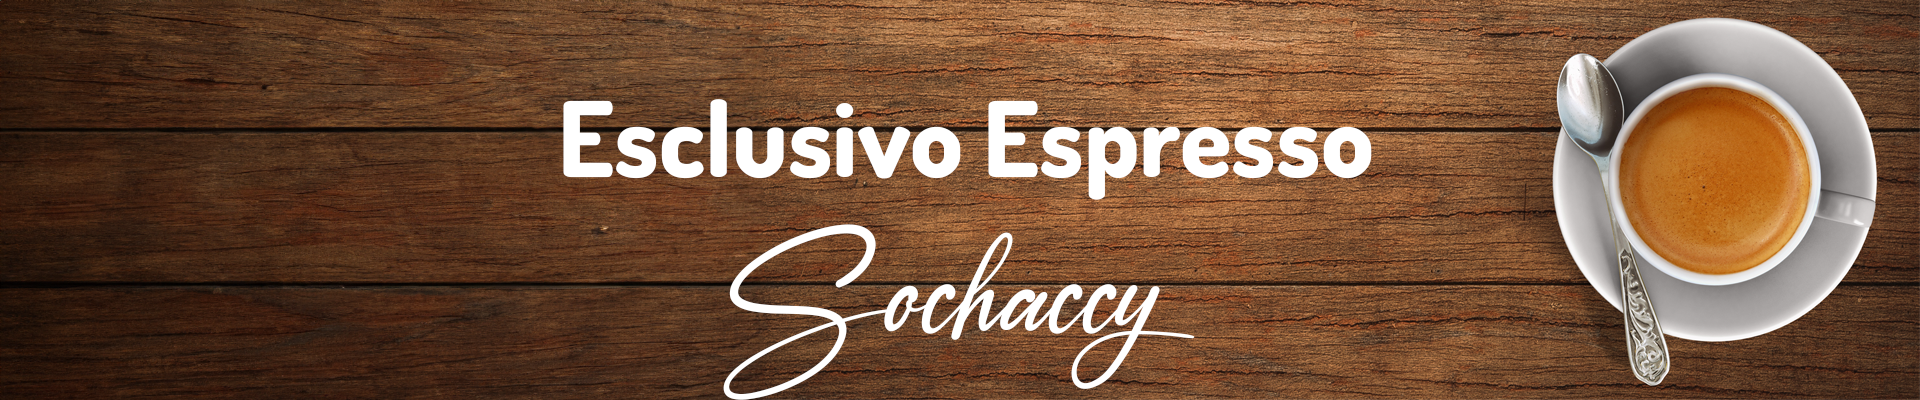 Esclusivo Espresso Kawa Sochaccy Świeżo Palona Kawa Ziarnista